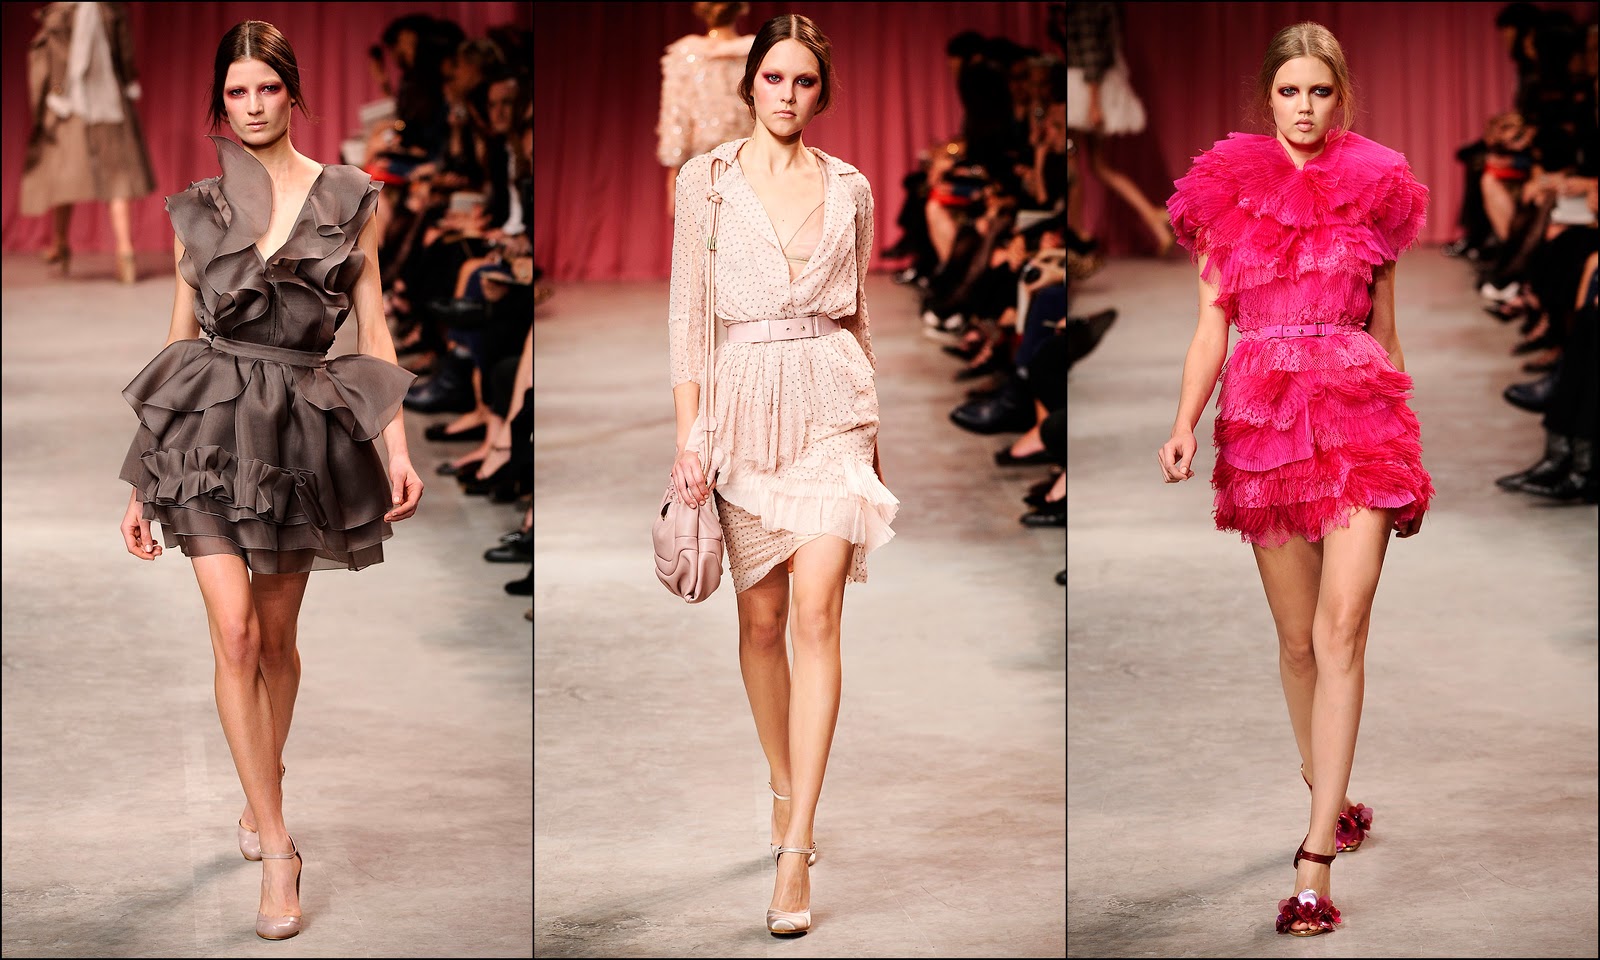 http://1.bp.blogspot.com/_lZPuK3X8DQY/TLCja5A7BkI/AAAAAAAAI4I/DKnFGBj6raw/s1600/Paris+runway+top+dresses.jpg